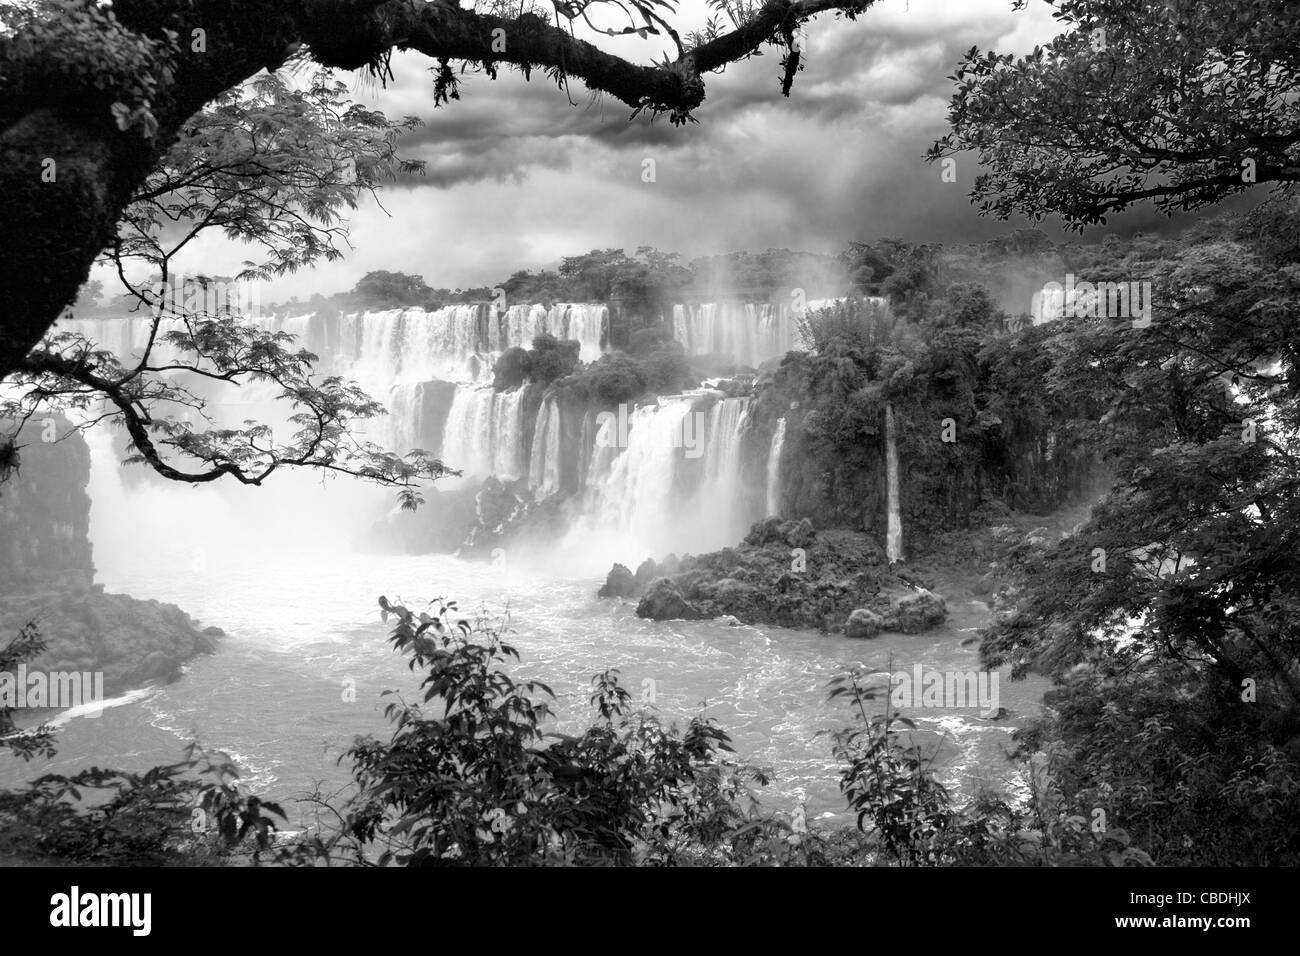 Cascate di Iguassù, lungo il fiume Iguazu. Posta al confine di Argentina e Brasile. Foto Stock